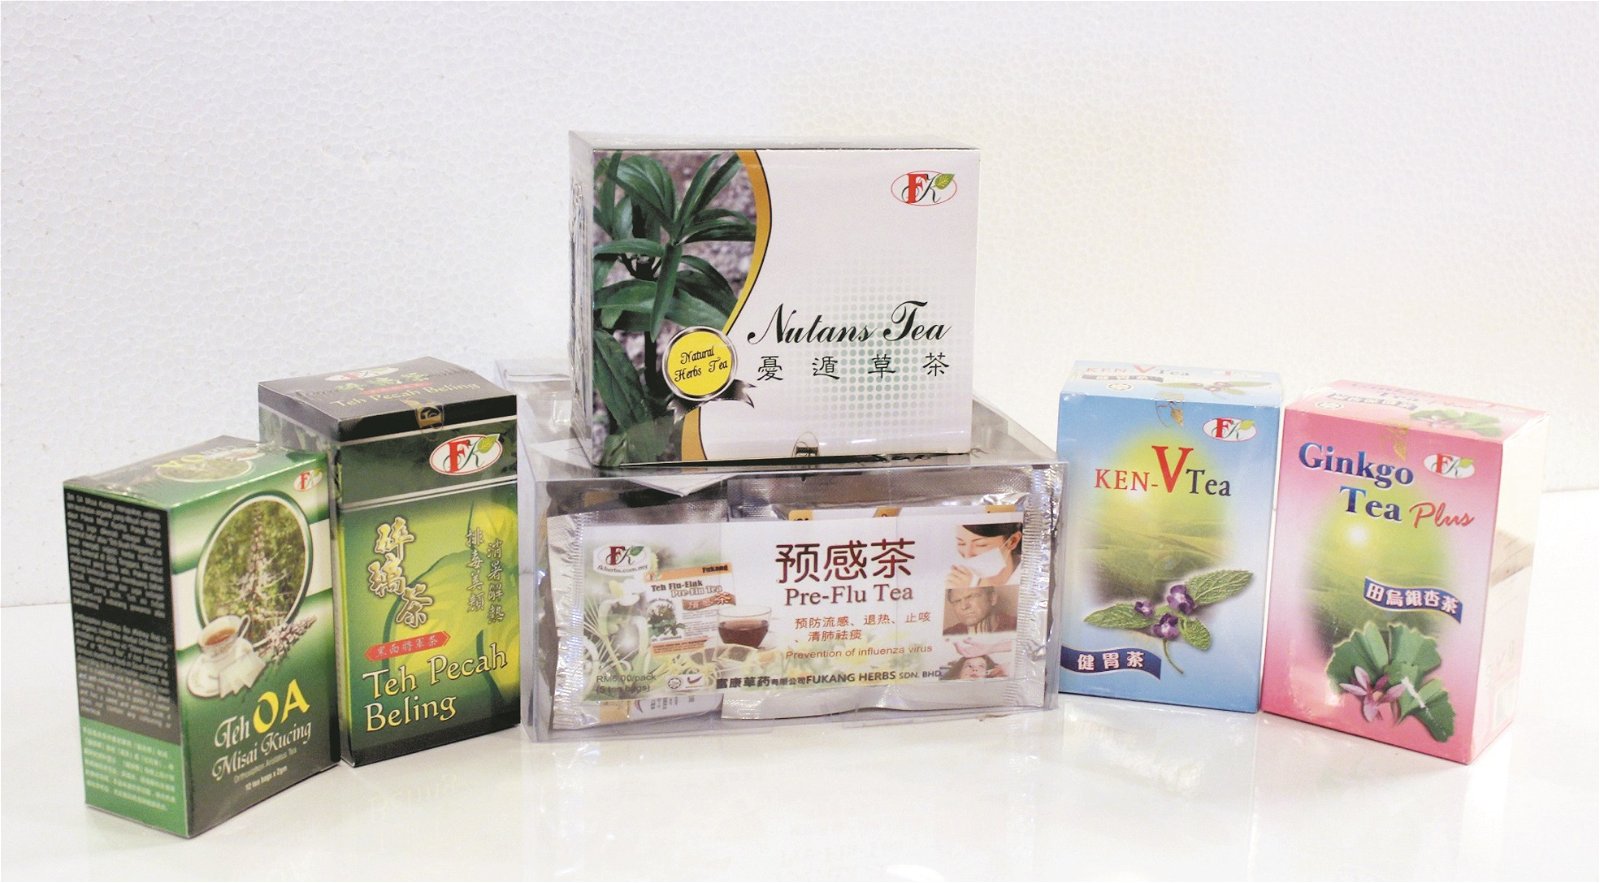 为灌输更多人有关传统草药的保健知识，富康推出全新品牌——御活（EU-PHO），以将旗下的草药茶重新定位。